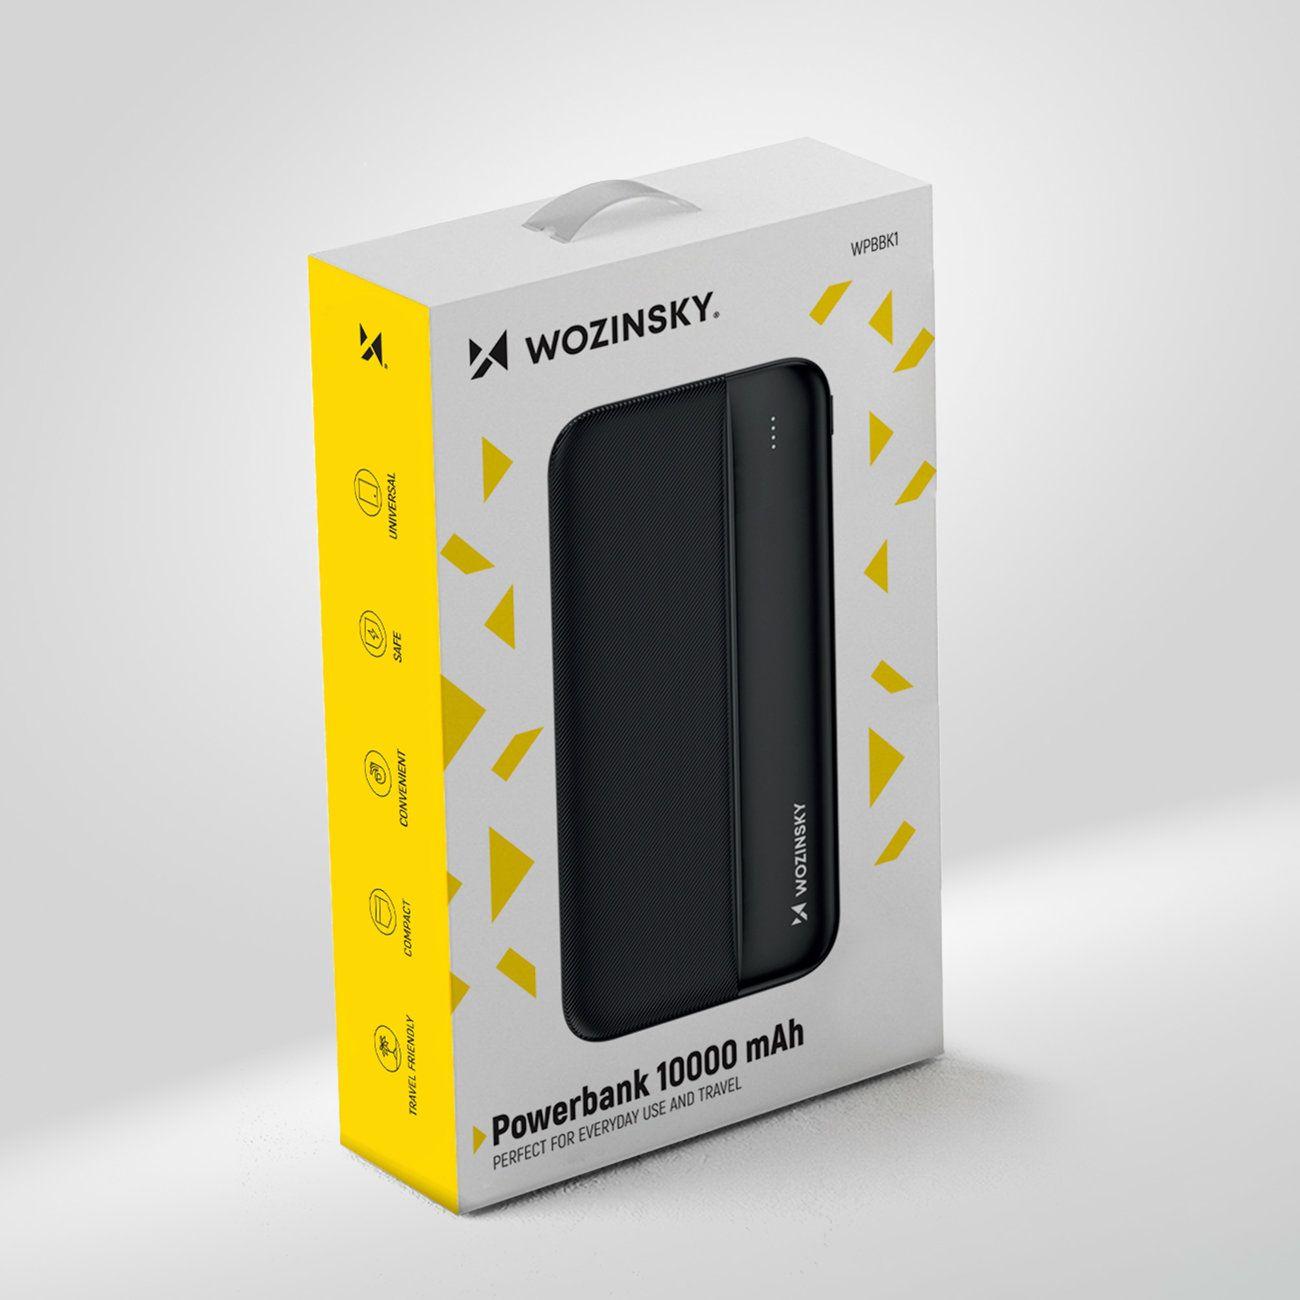 Wozinsky power bank 10000mAh 2 x USB černá WPBBK1 - powerbanka pro 2 zařízení s inteligentním čipem